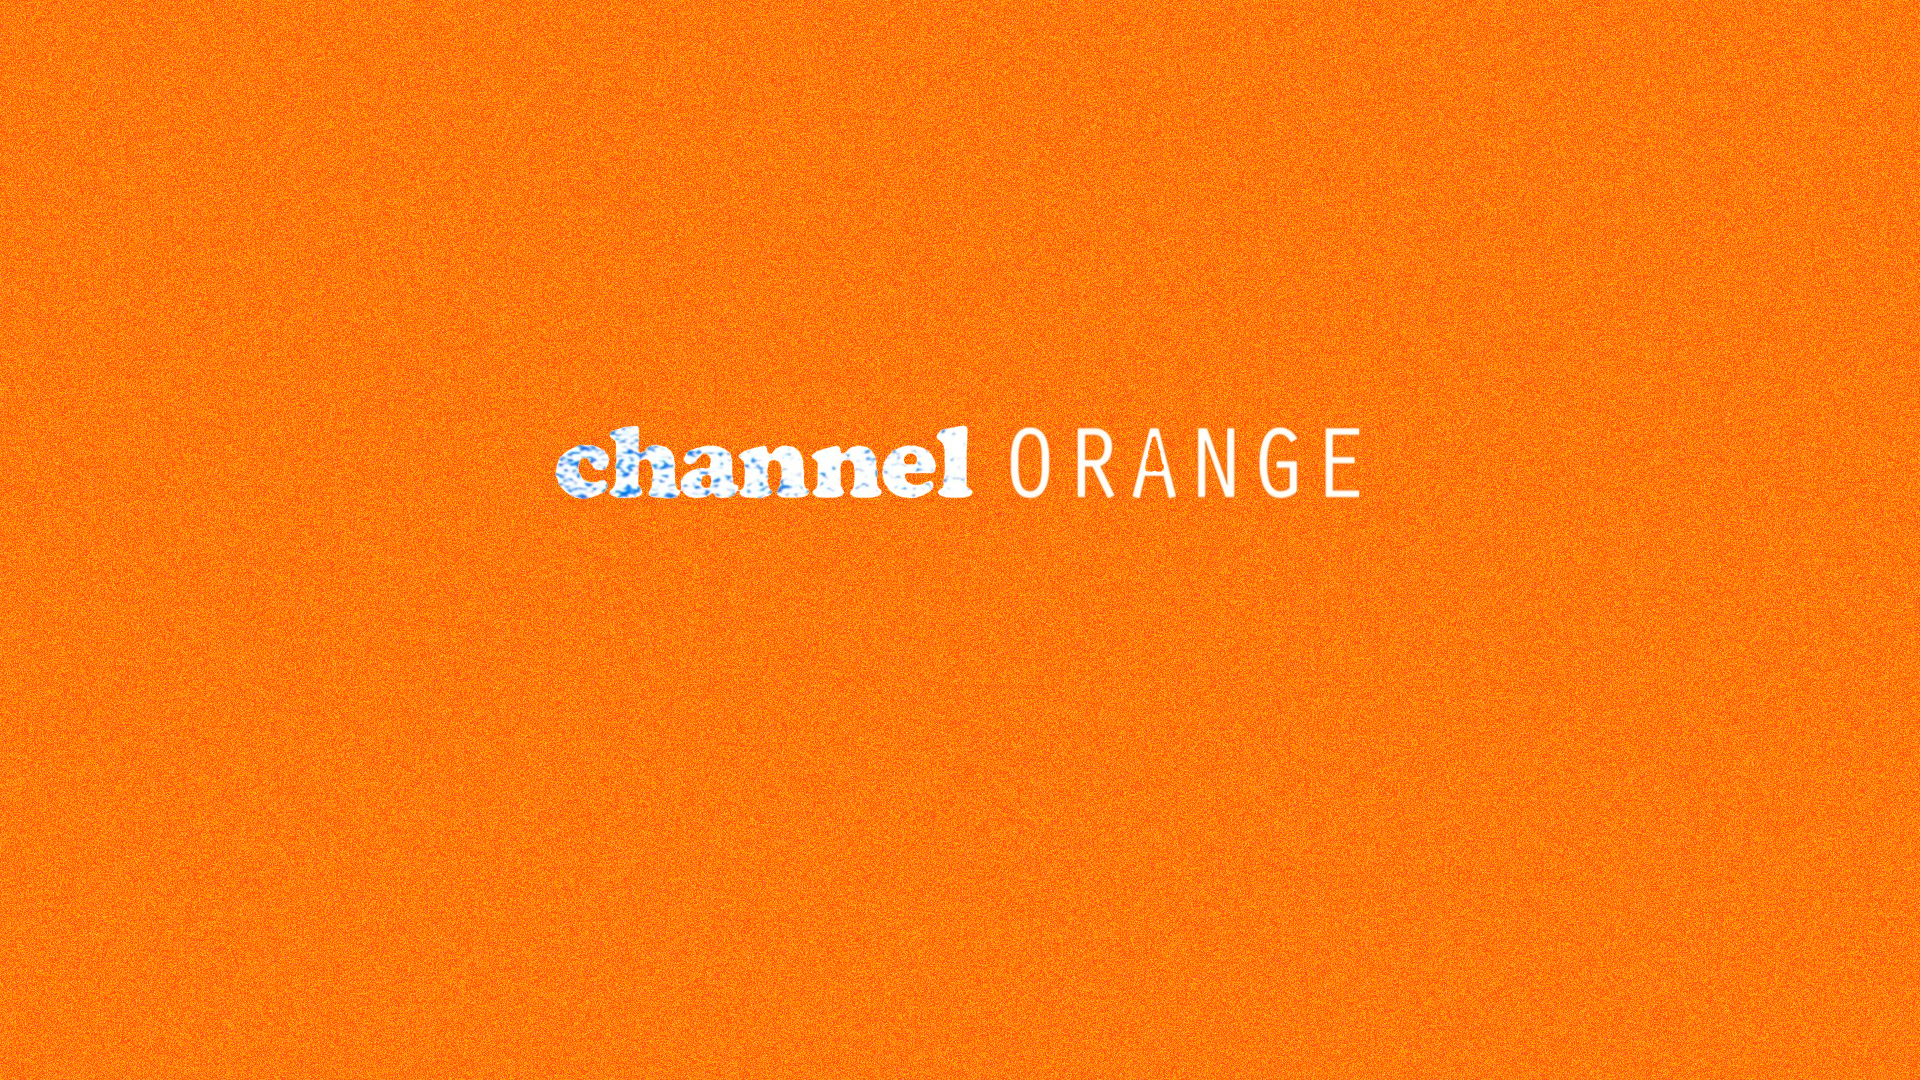 Frank Ocean   Channel Orange by Djohariah on